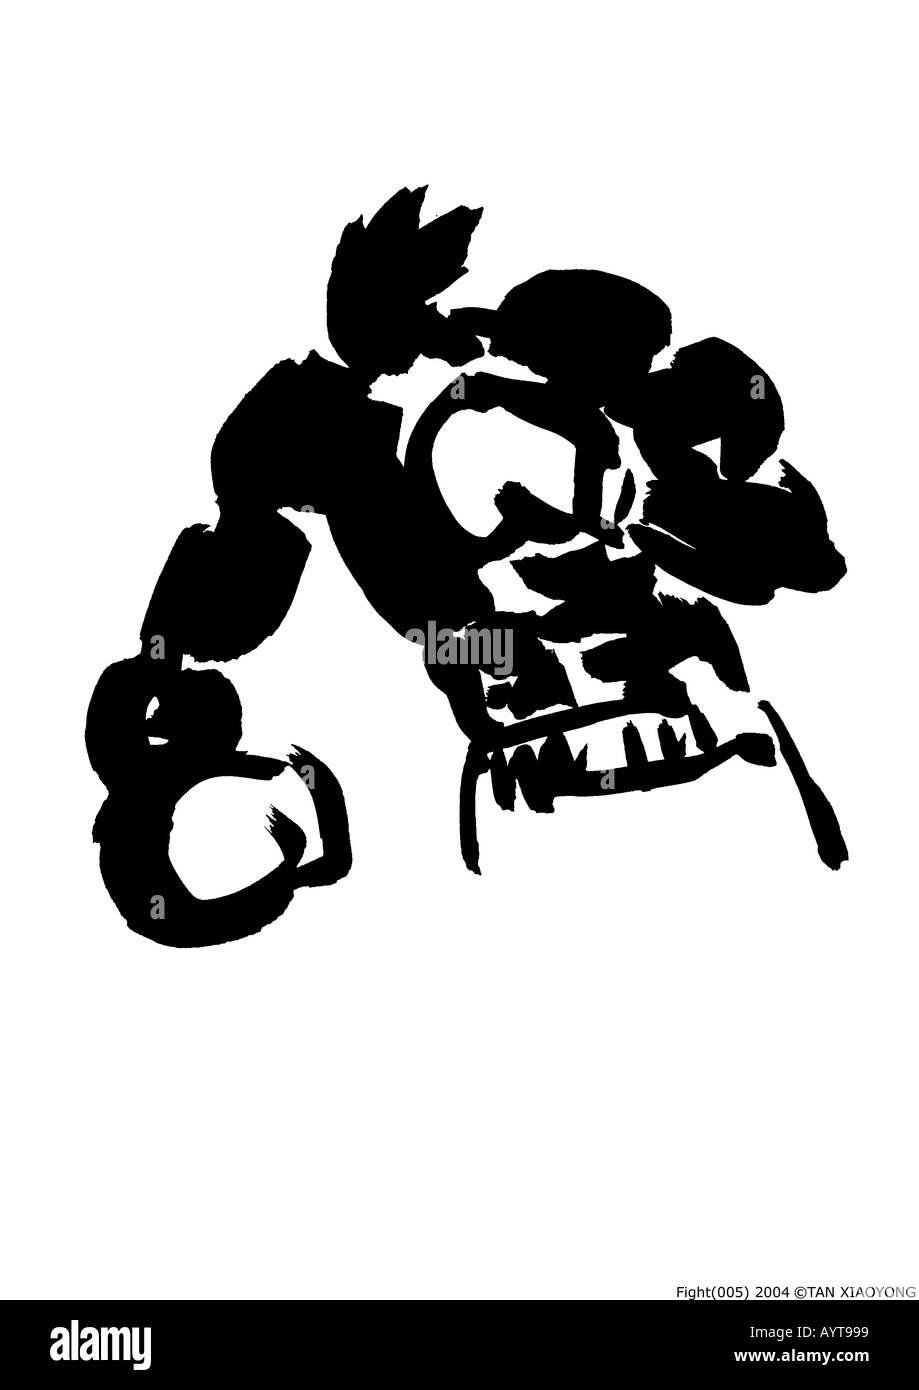 L'encre noire artistique peinture d'un combat de boxe Banque D'Images